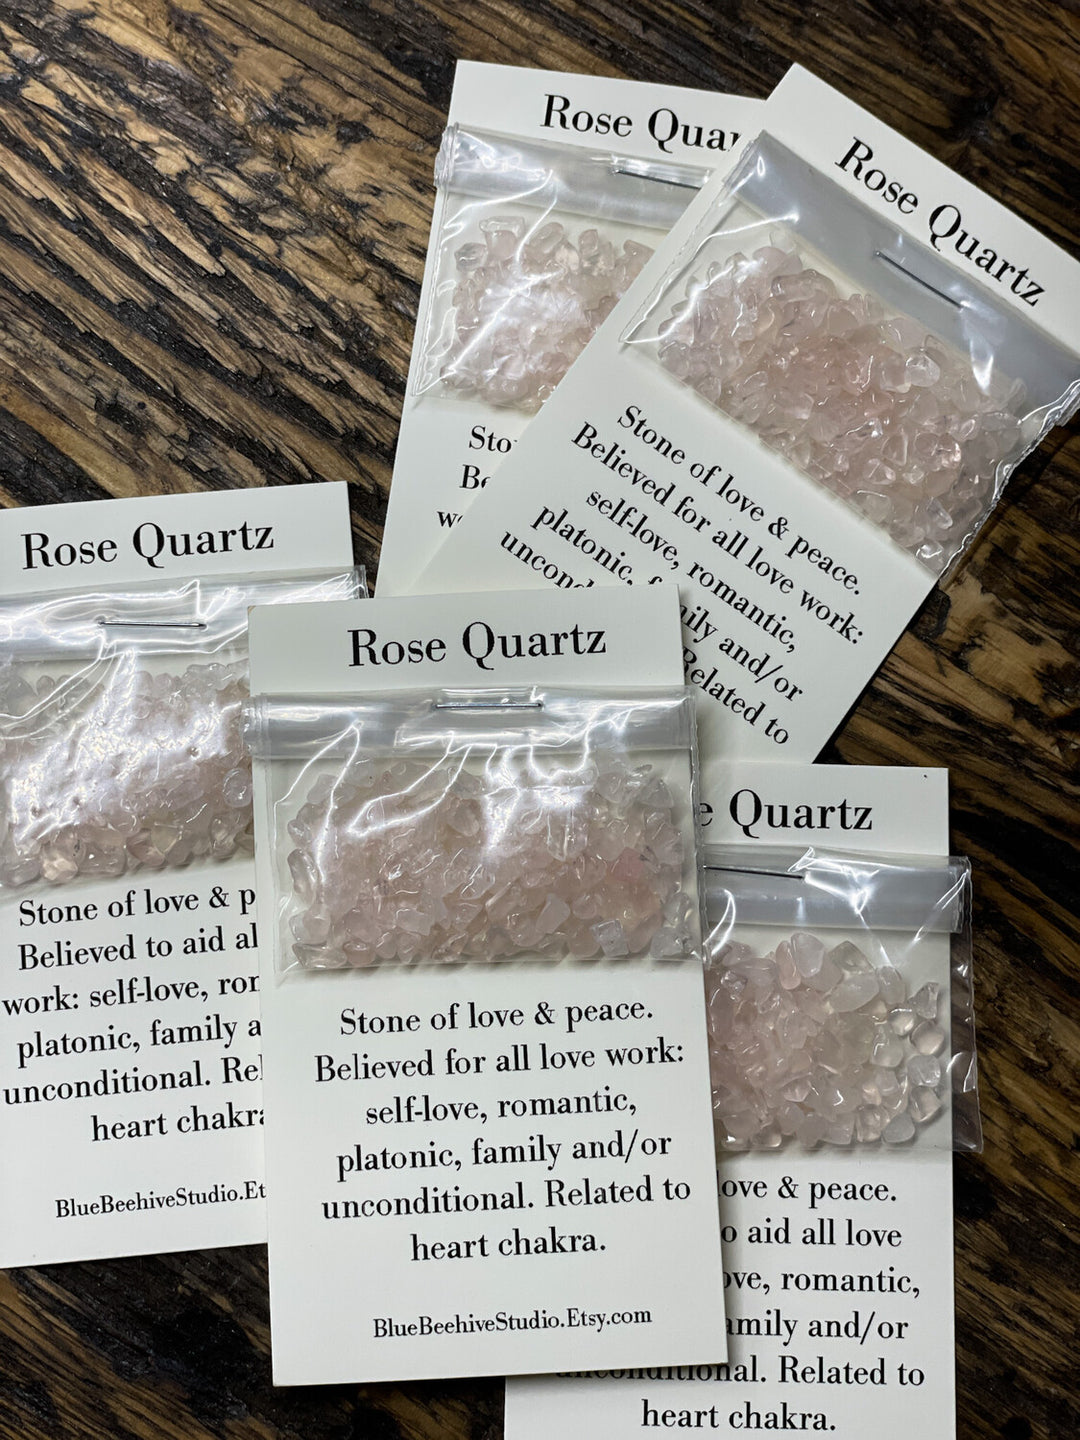 Rose Quartz chips